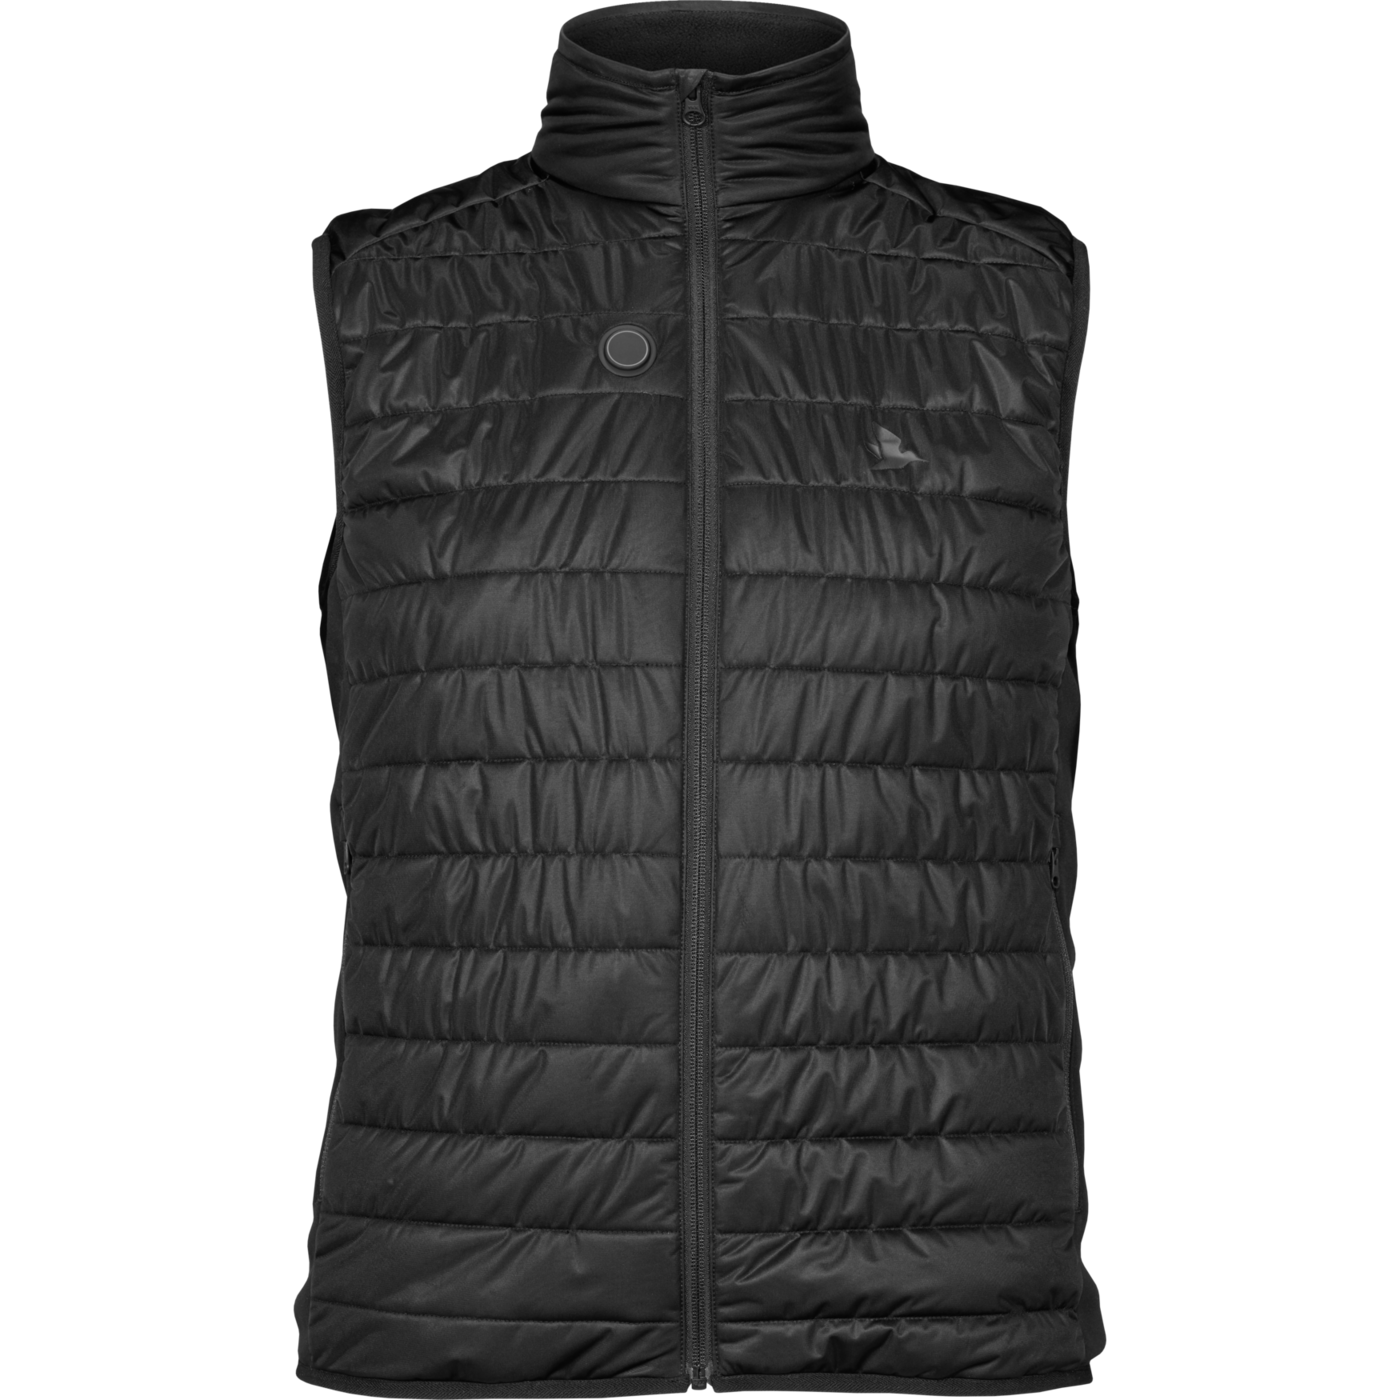 Seeland Heat vest - Black - 4XL thumbnail